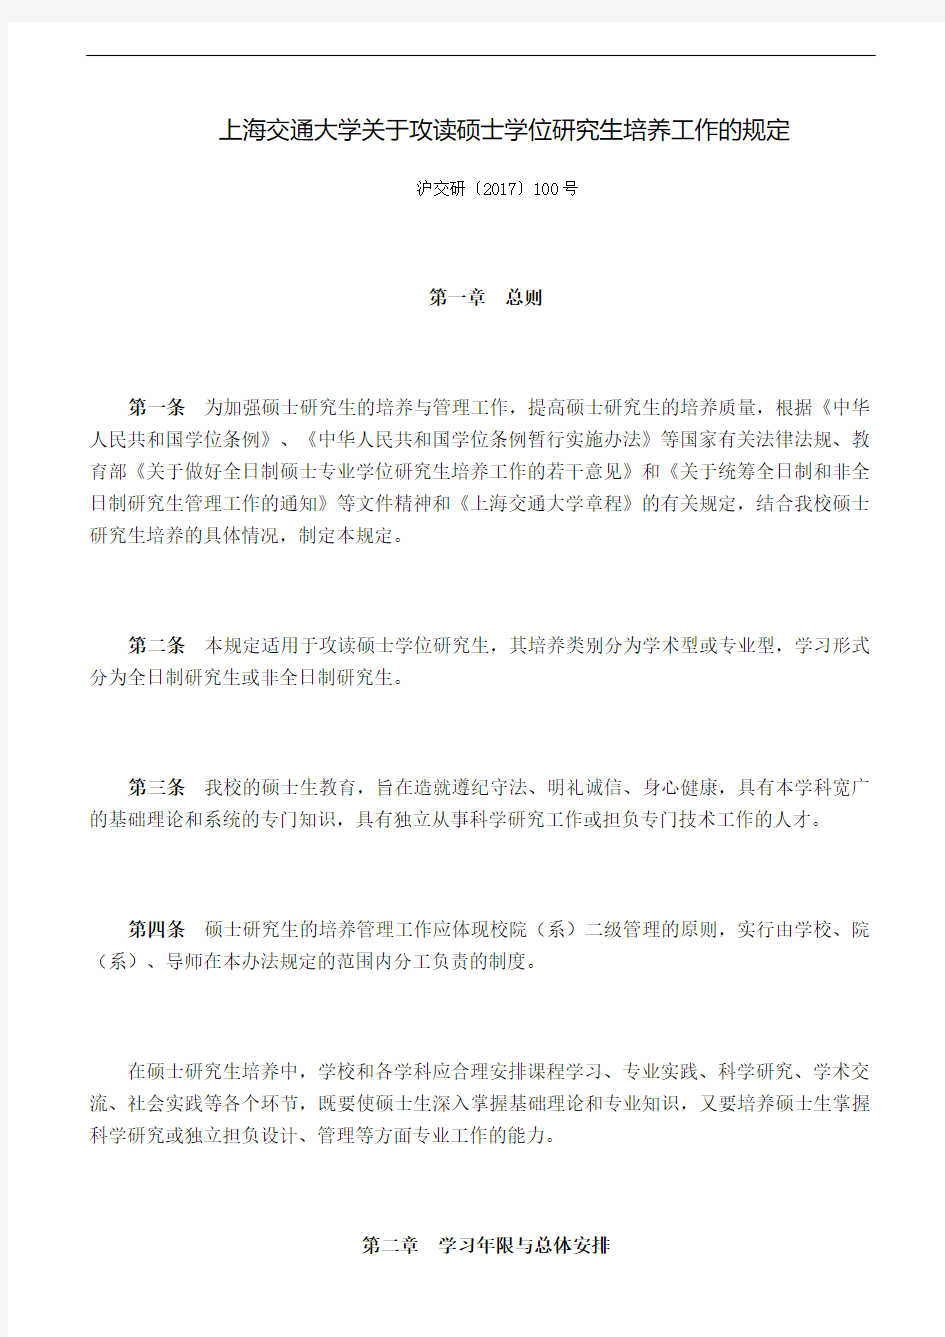 上海交通大学关于攻读硕士学位研究生培养工作的规定